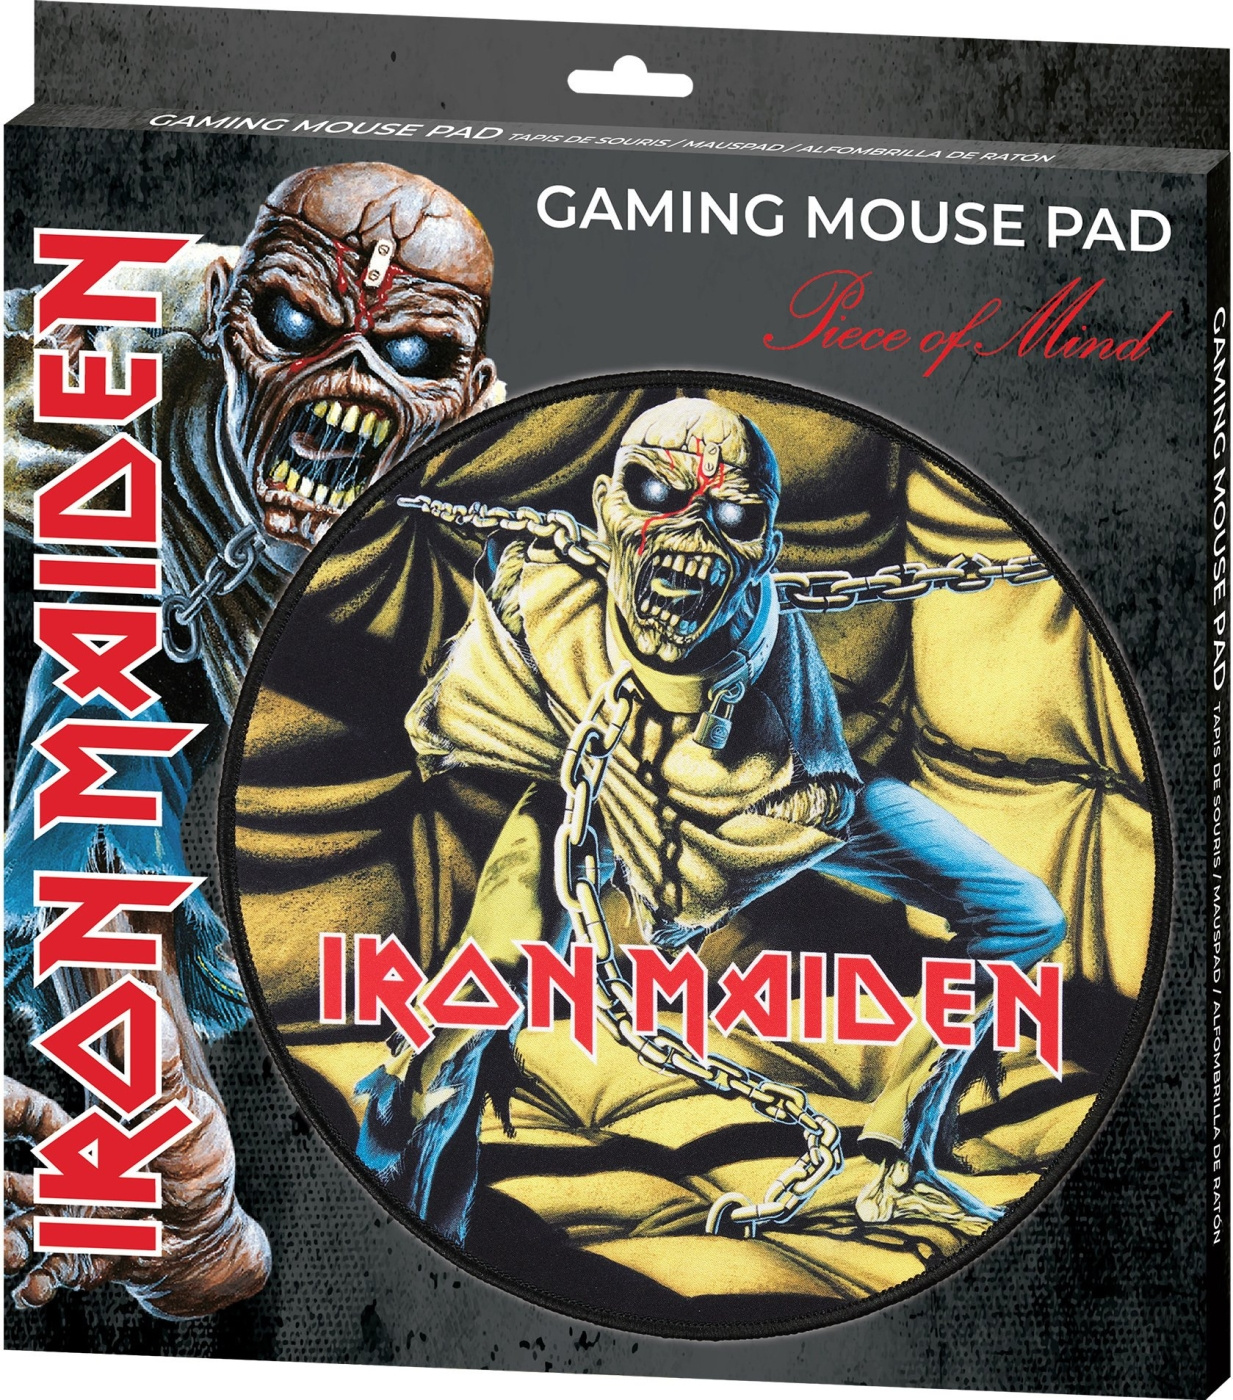 Tapis de souris XXL - Mouse pad XXL Iron Maiden